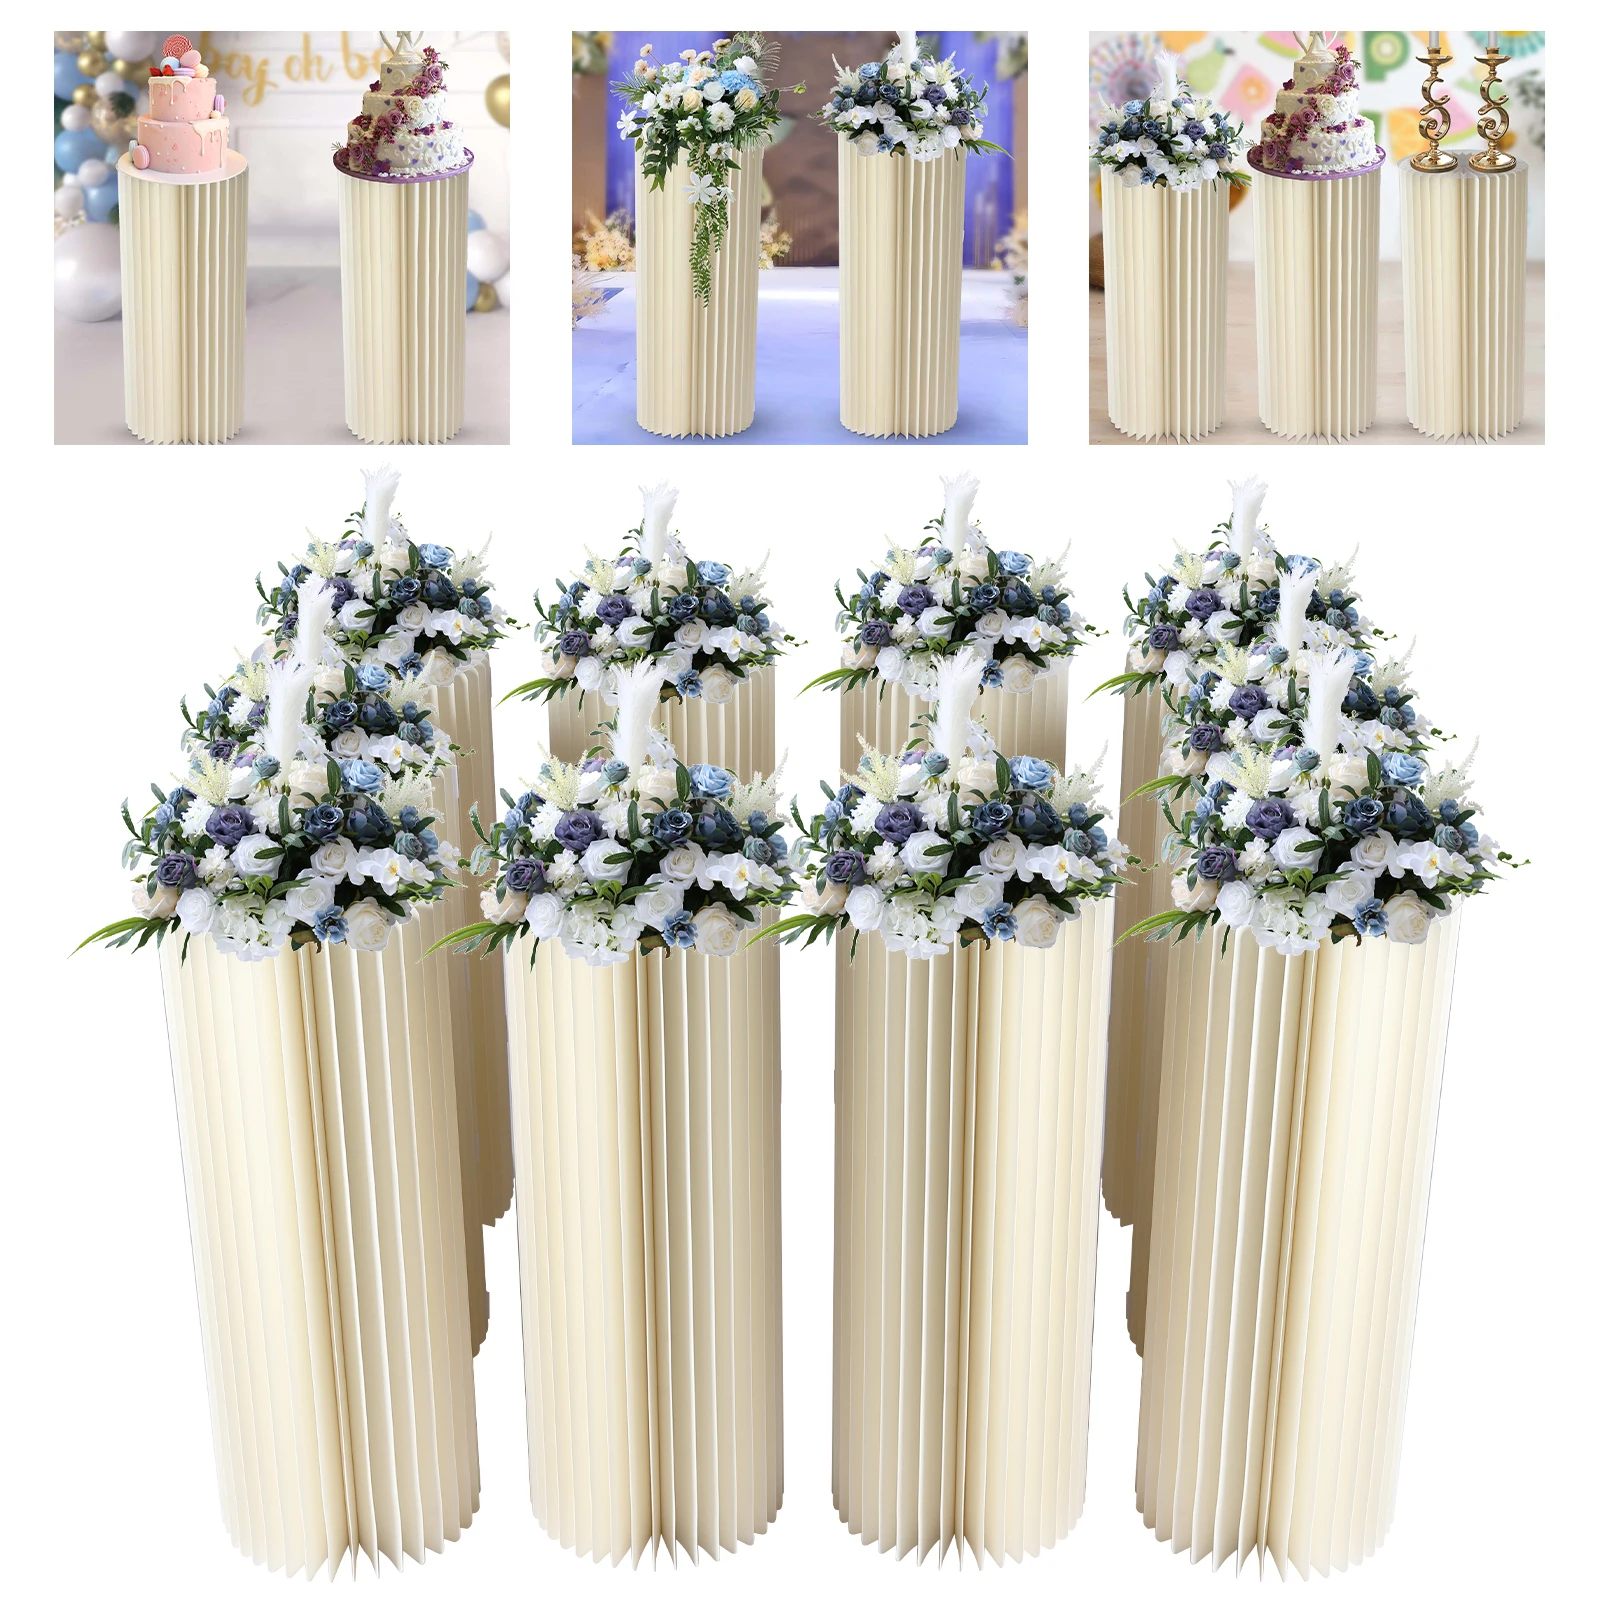 10db esküvői cylindre centerpieces Költő Karton vases Magas virágos Váza virágok állvány számára Félfogadás tables decorations